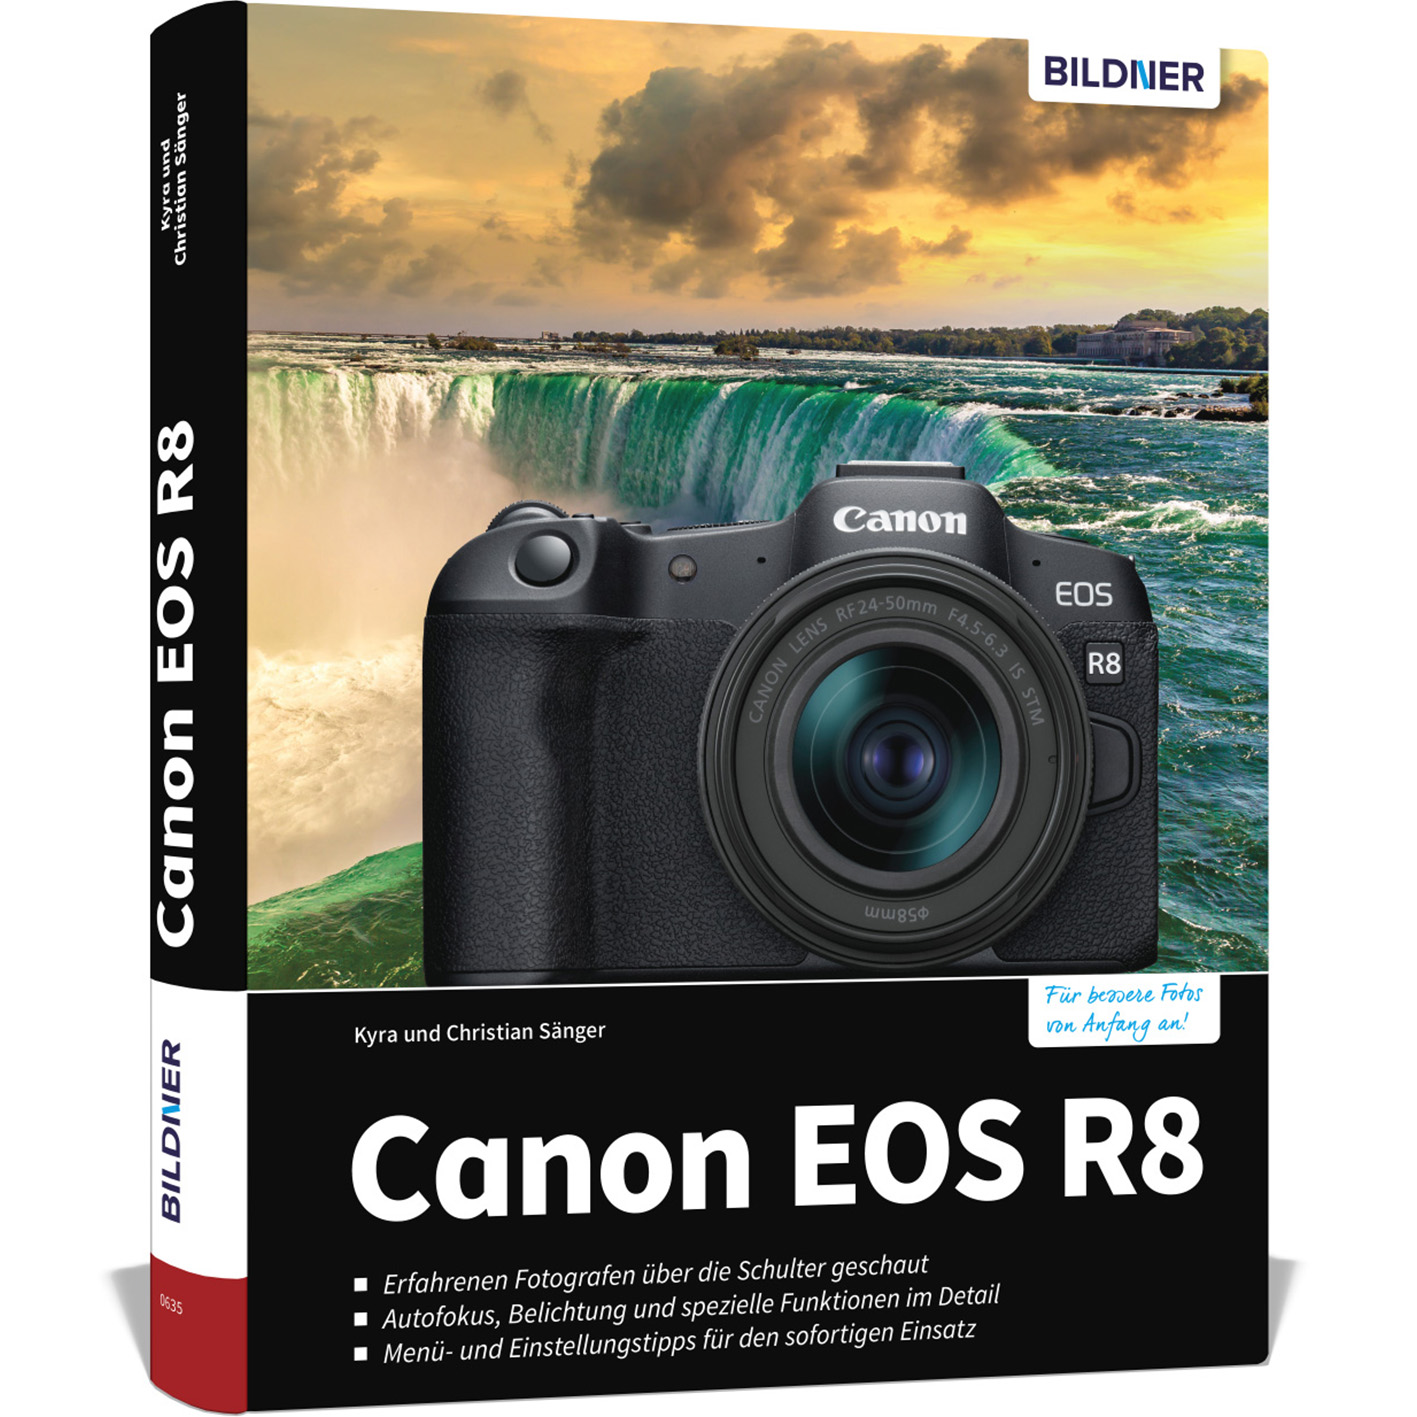 Canon EOS R8 - Das zu umfangreiche Praxisbuch Ihrer Kamera